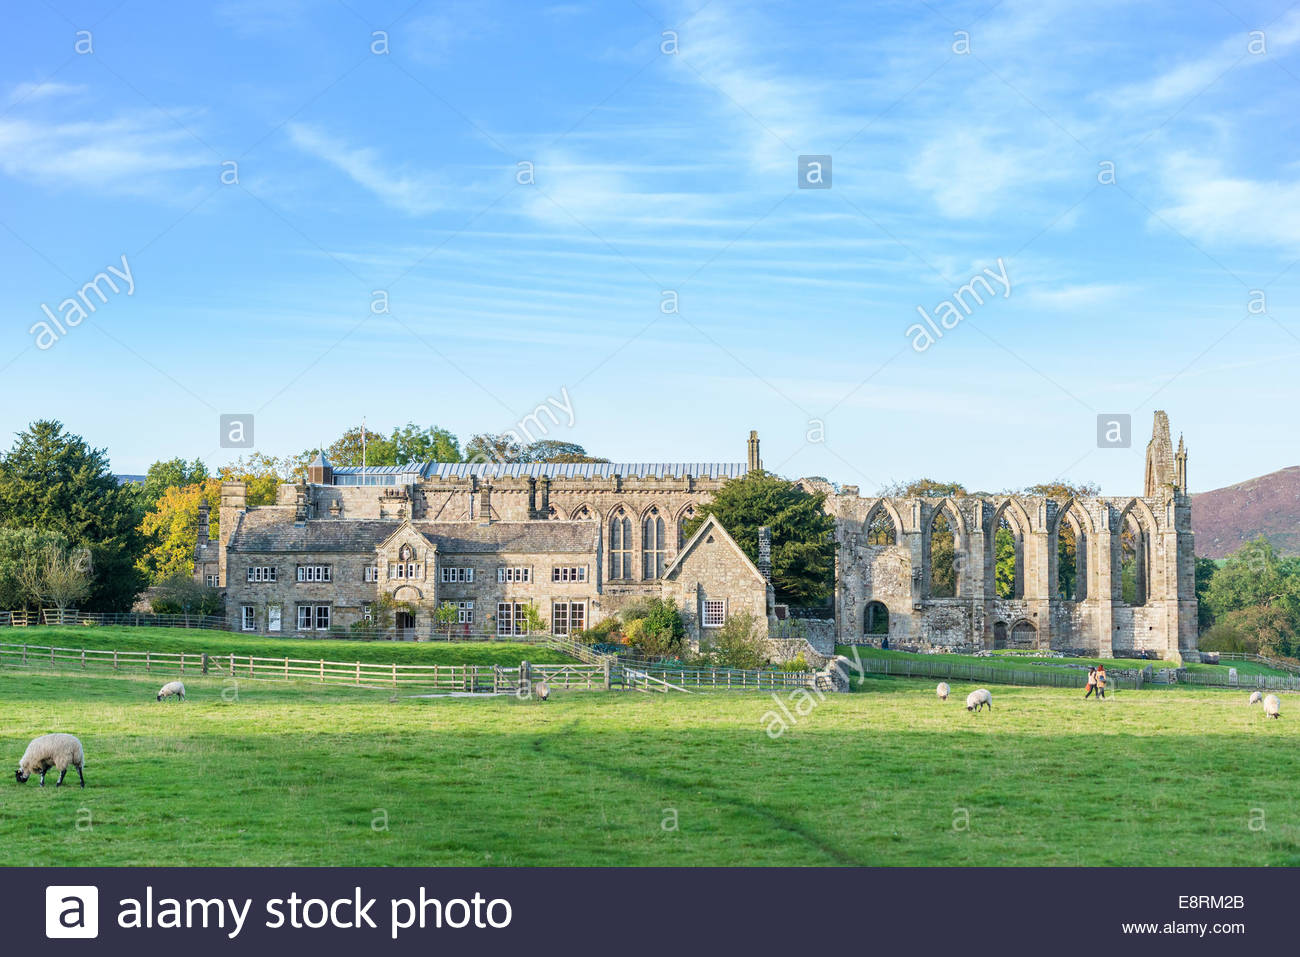 Bolton Priory #24